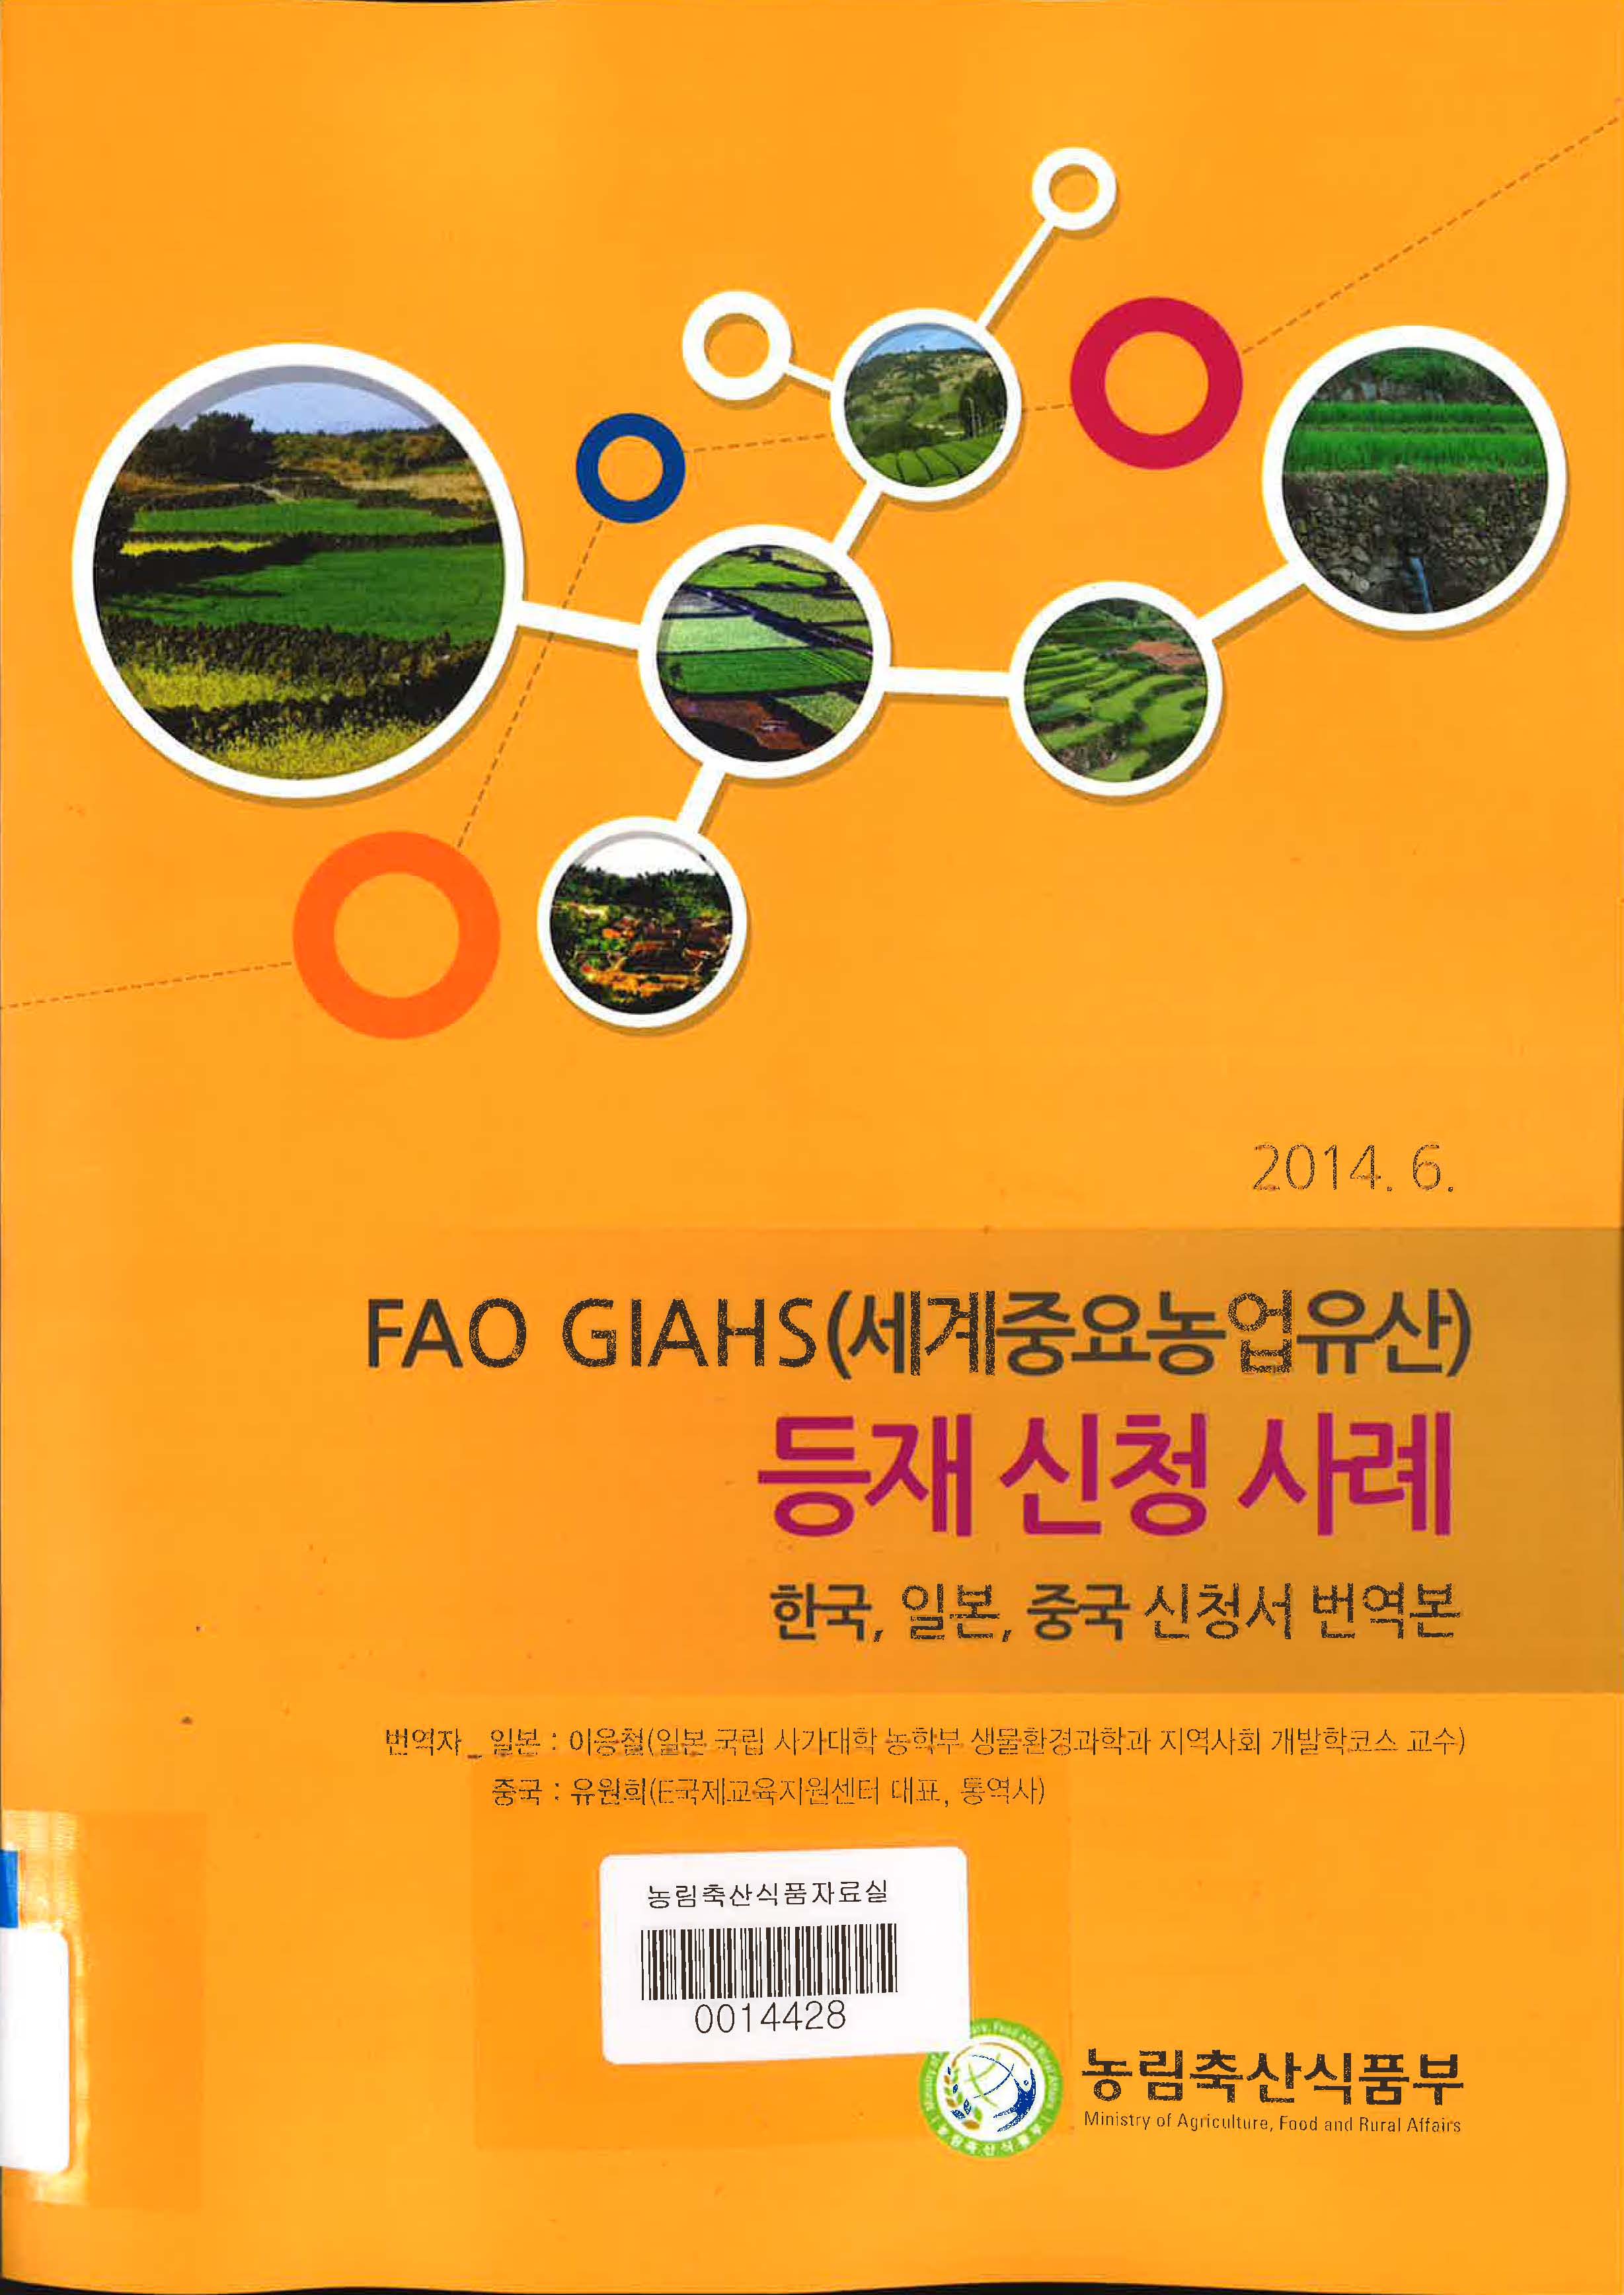 FAO GIAHS(세계중요농업유산) 등재 신청 사례 : 한국, 일본, 중국 신청서 번역본